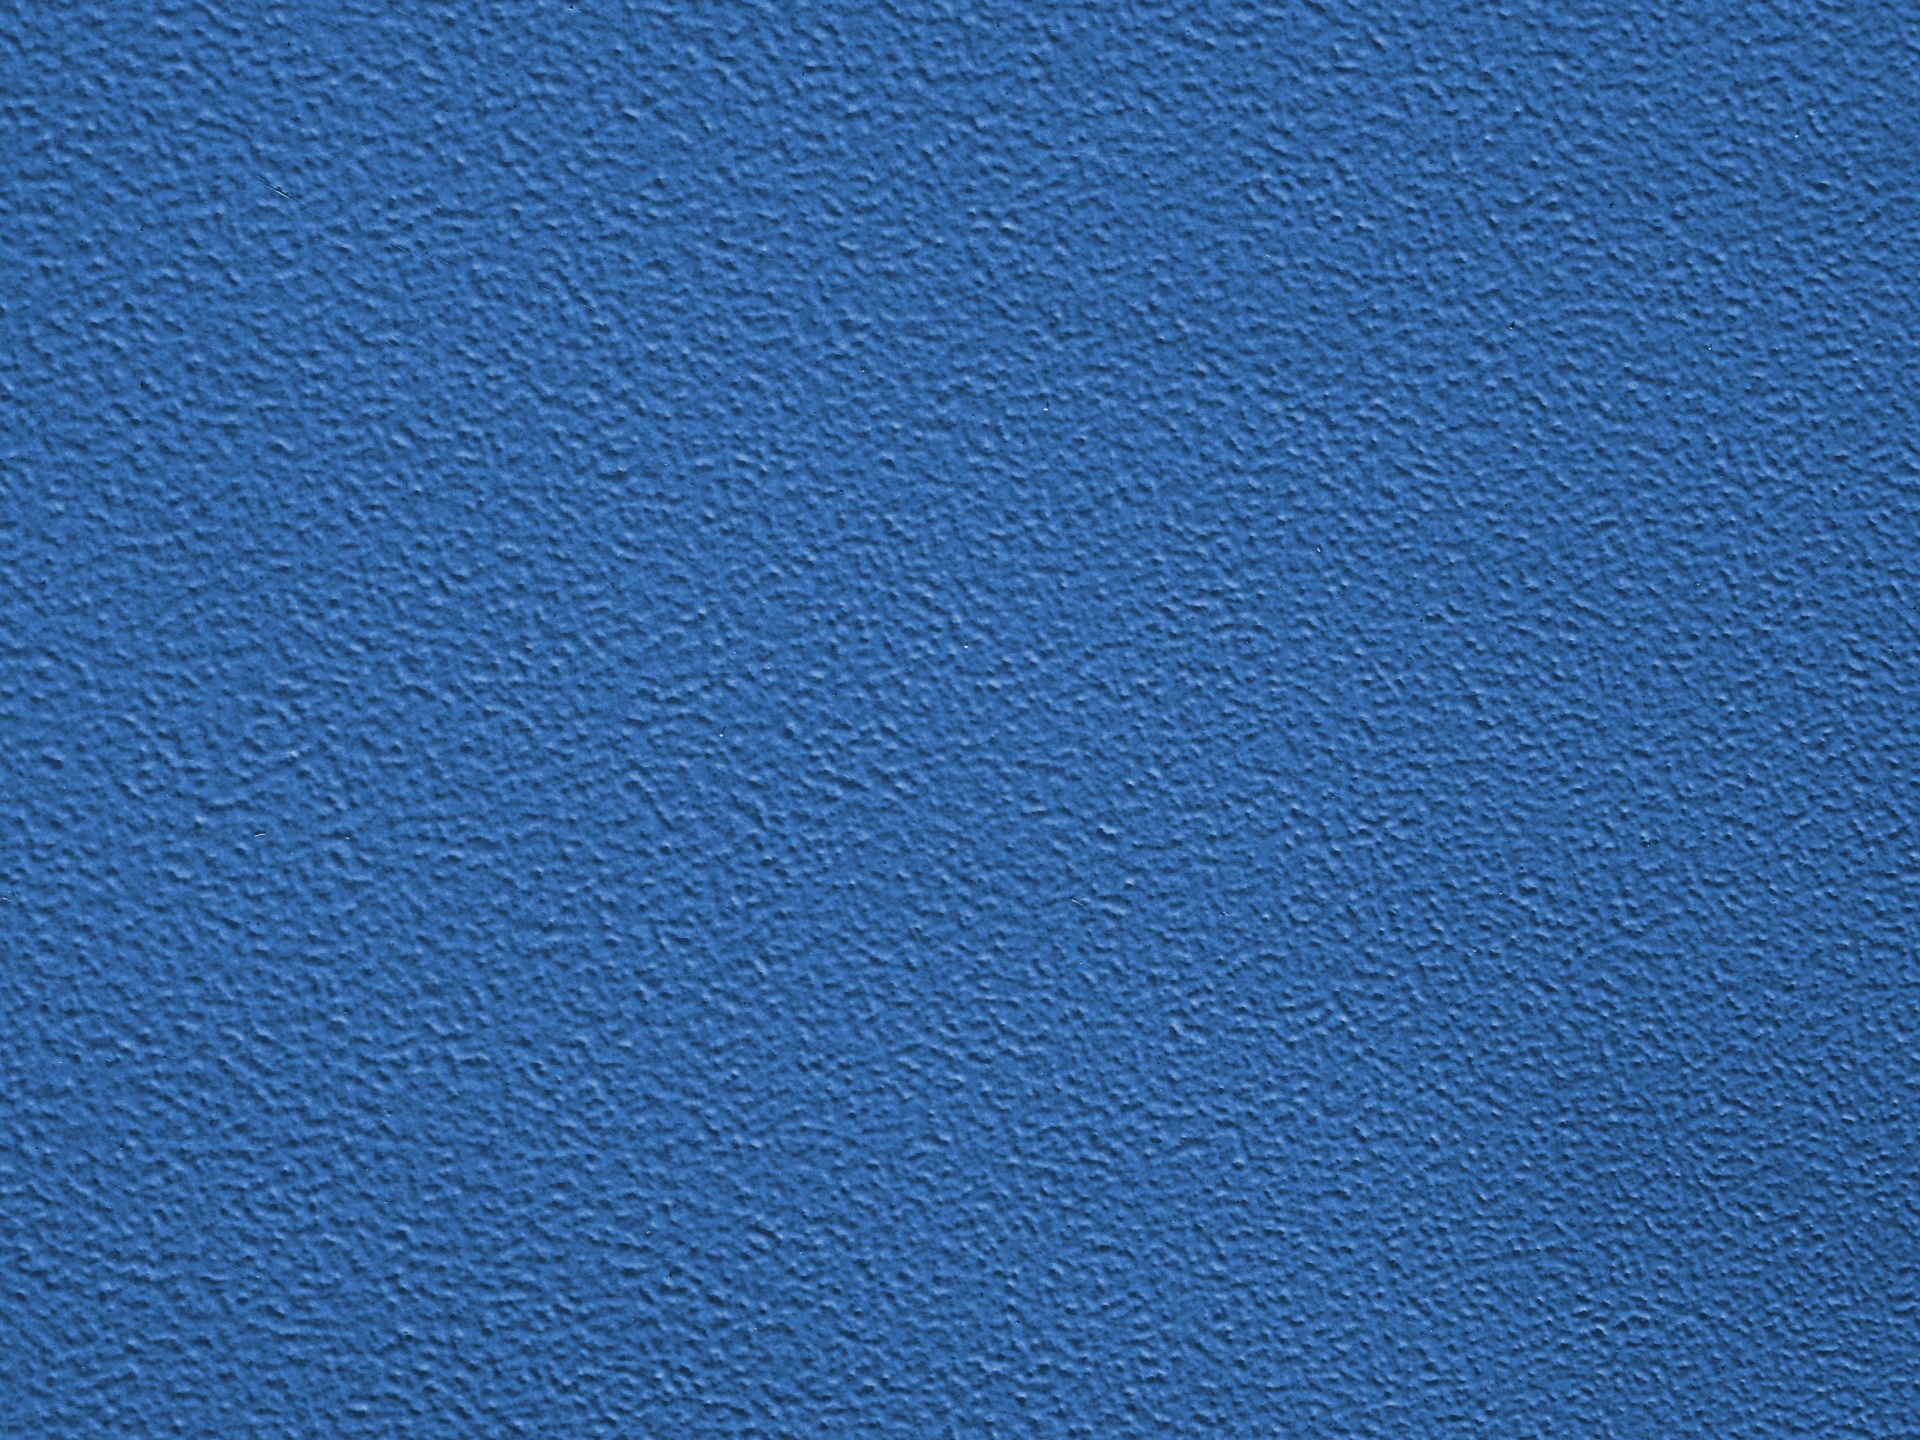 Azul texturizados fundo do teste padrão